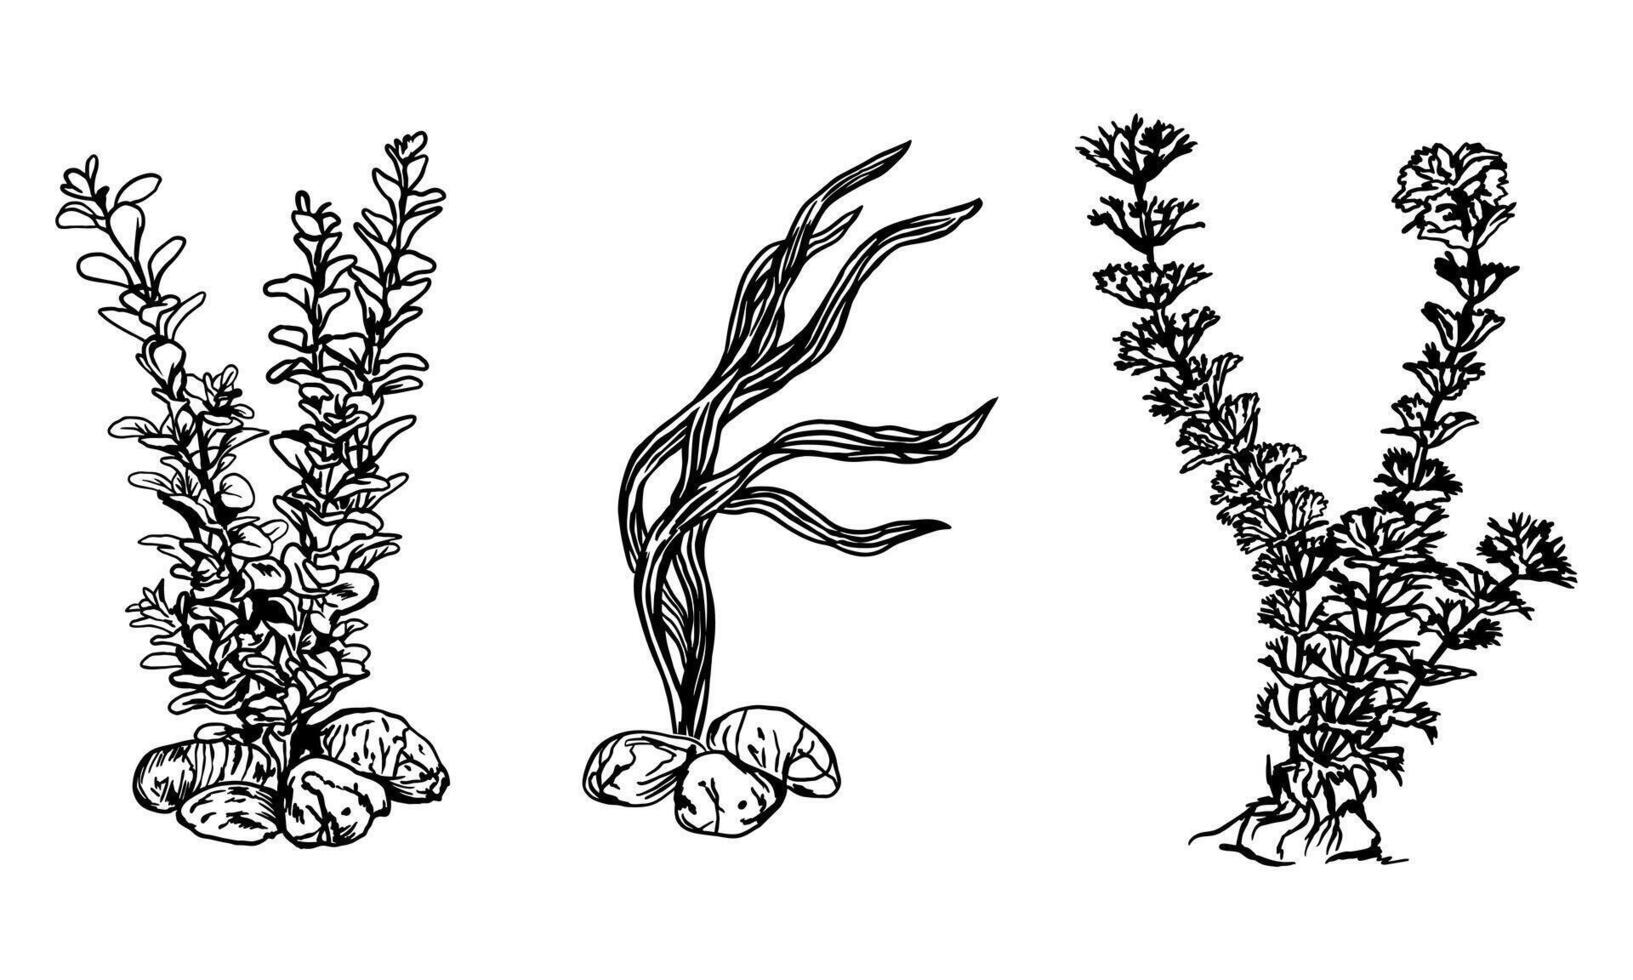 tång, kelp, grafik. vektor illustration av under vattnet växter. design element för kort, inbjudningar, banderoller, flygblad, täcker, etiketter, affischer.